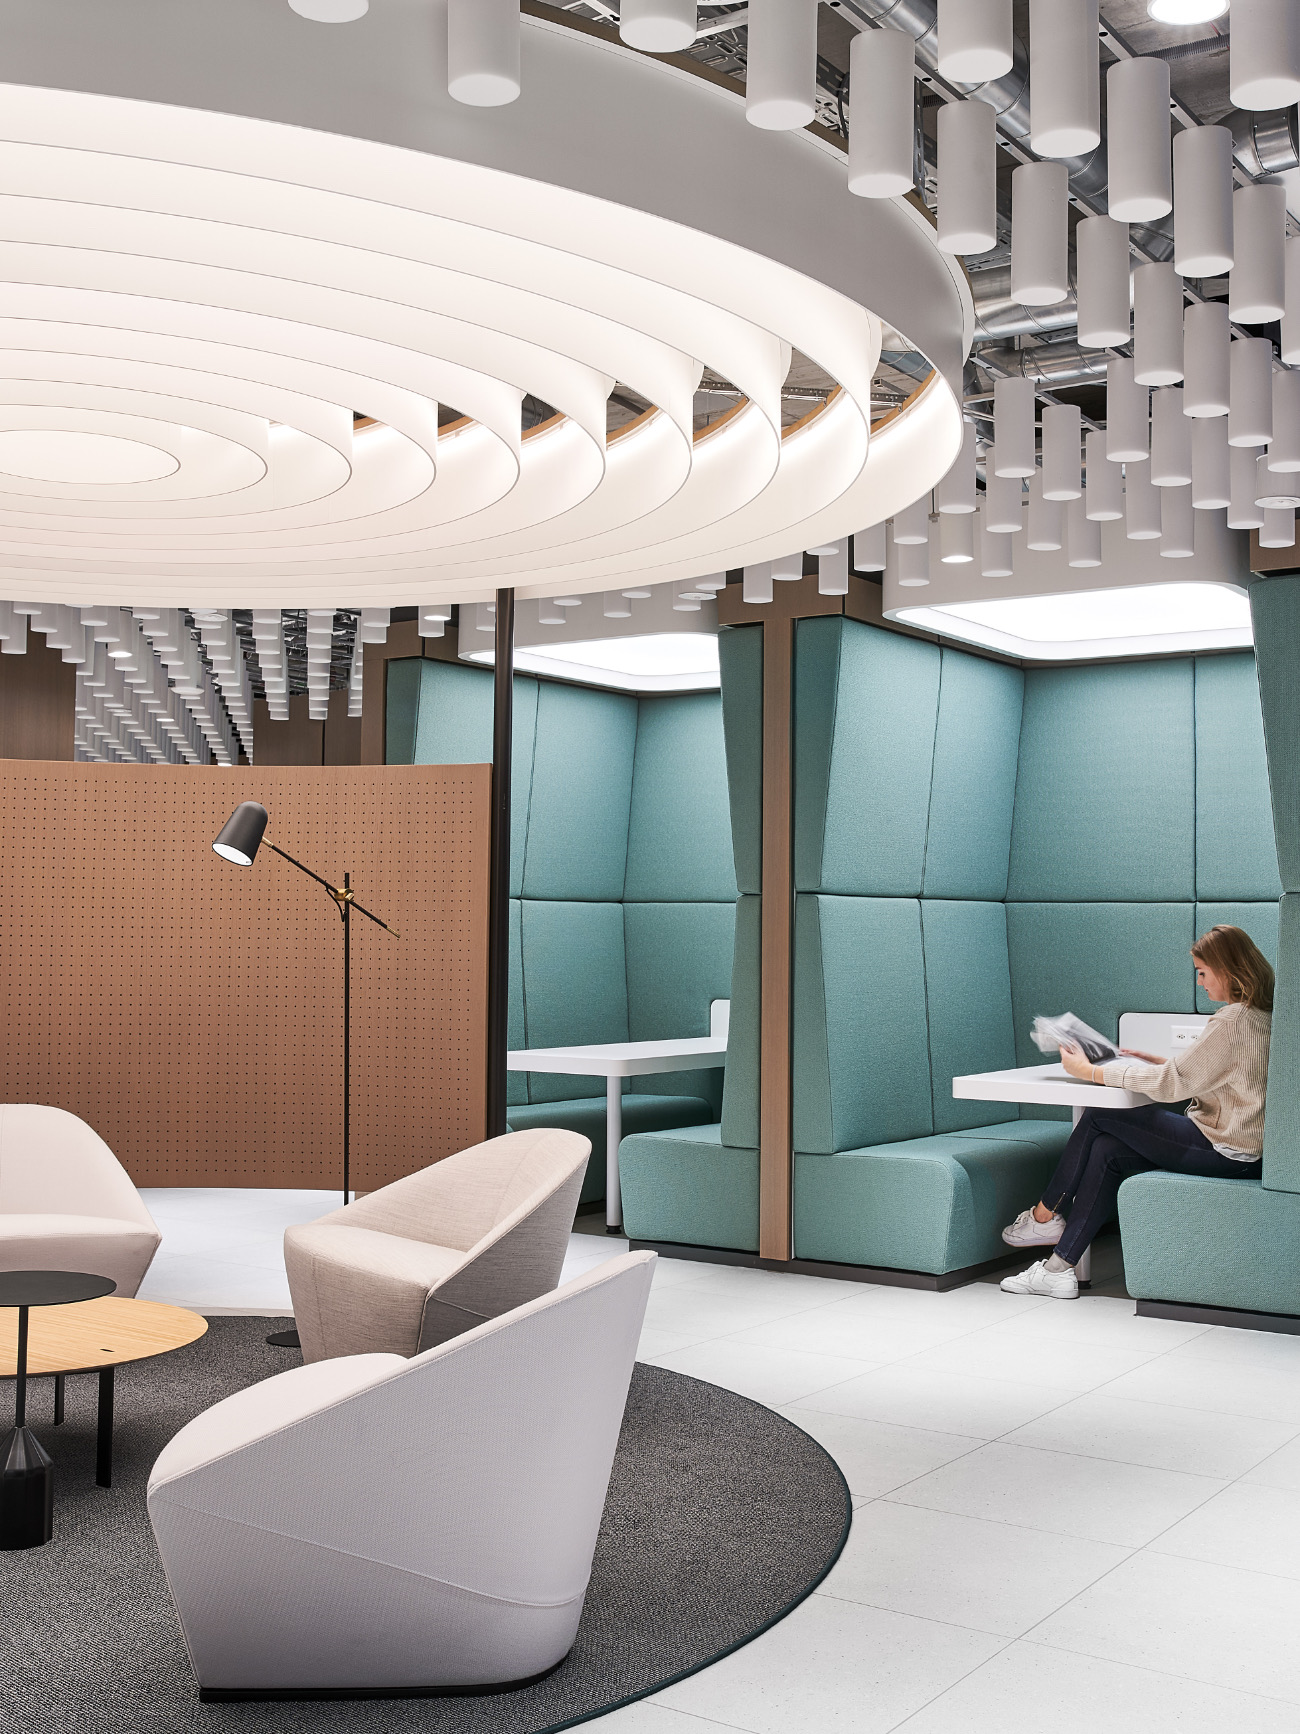 【某製薬会社のオフィスデザイン】- スイス, チューリッヒのファミレス席